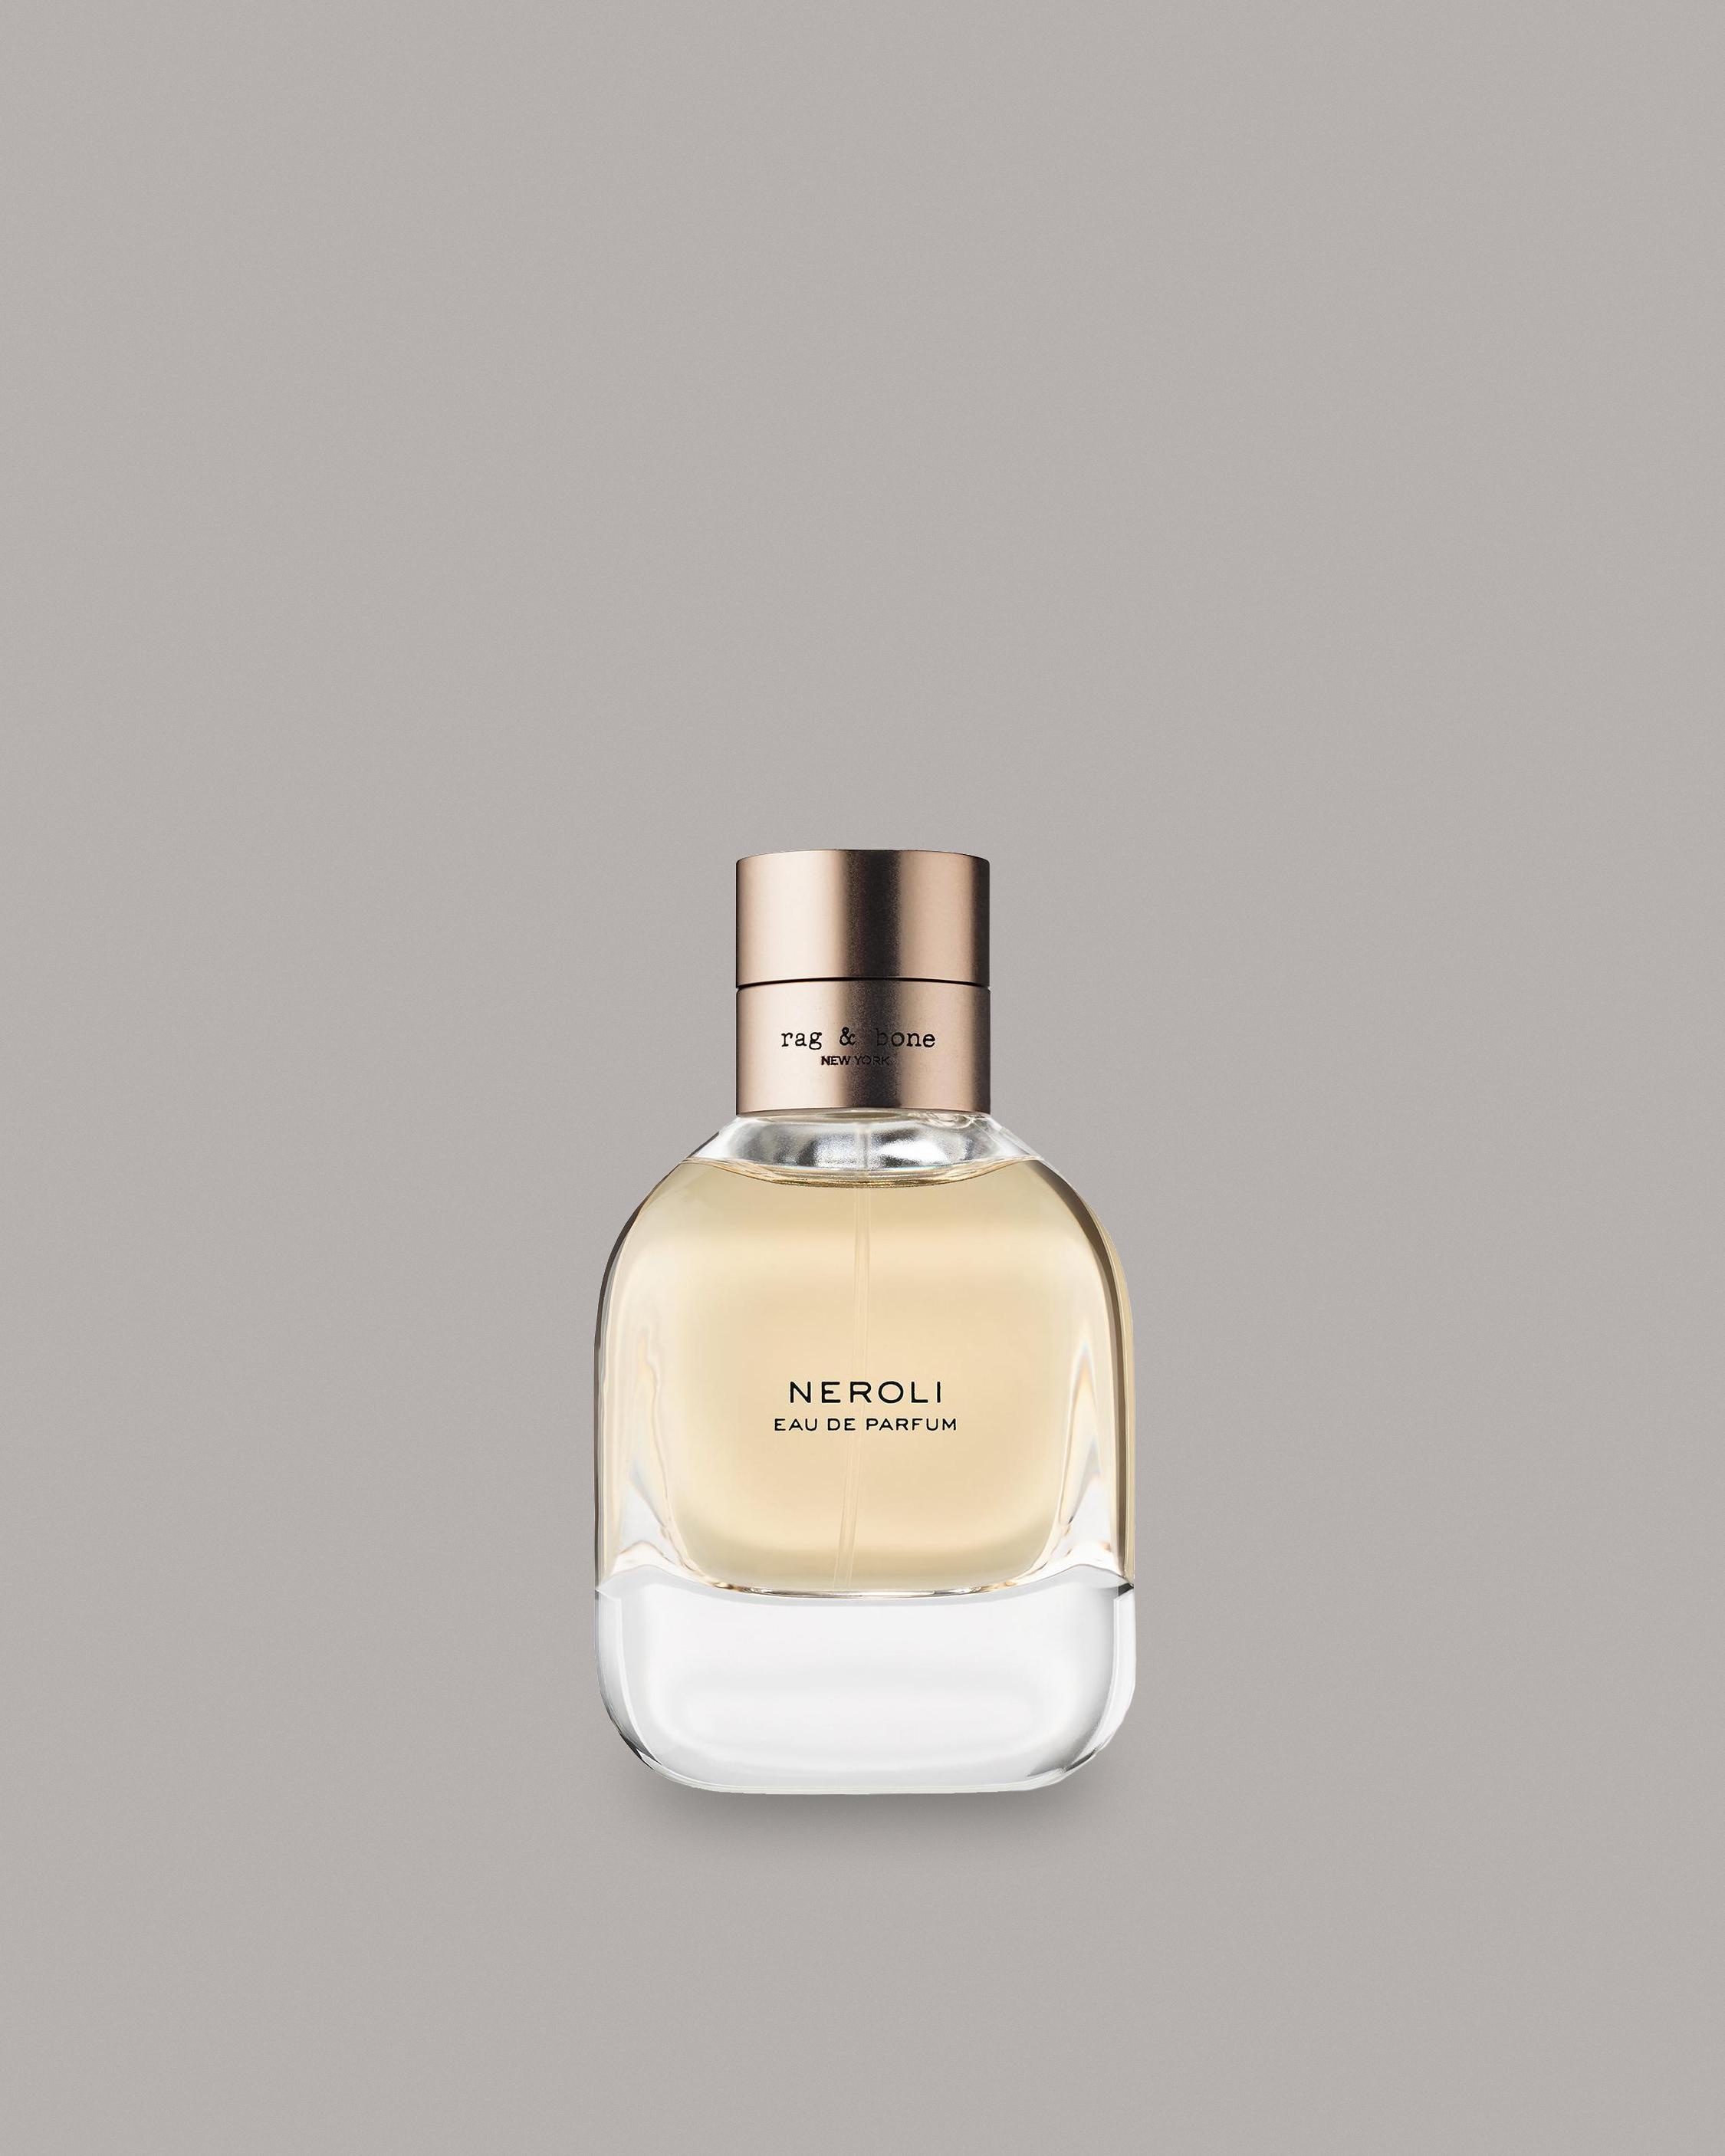 NEROLI 50ML
Fragrance - 1